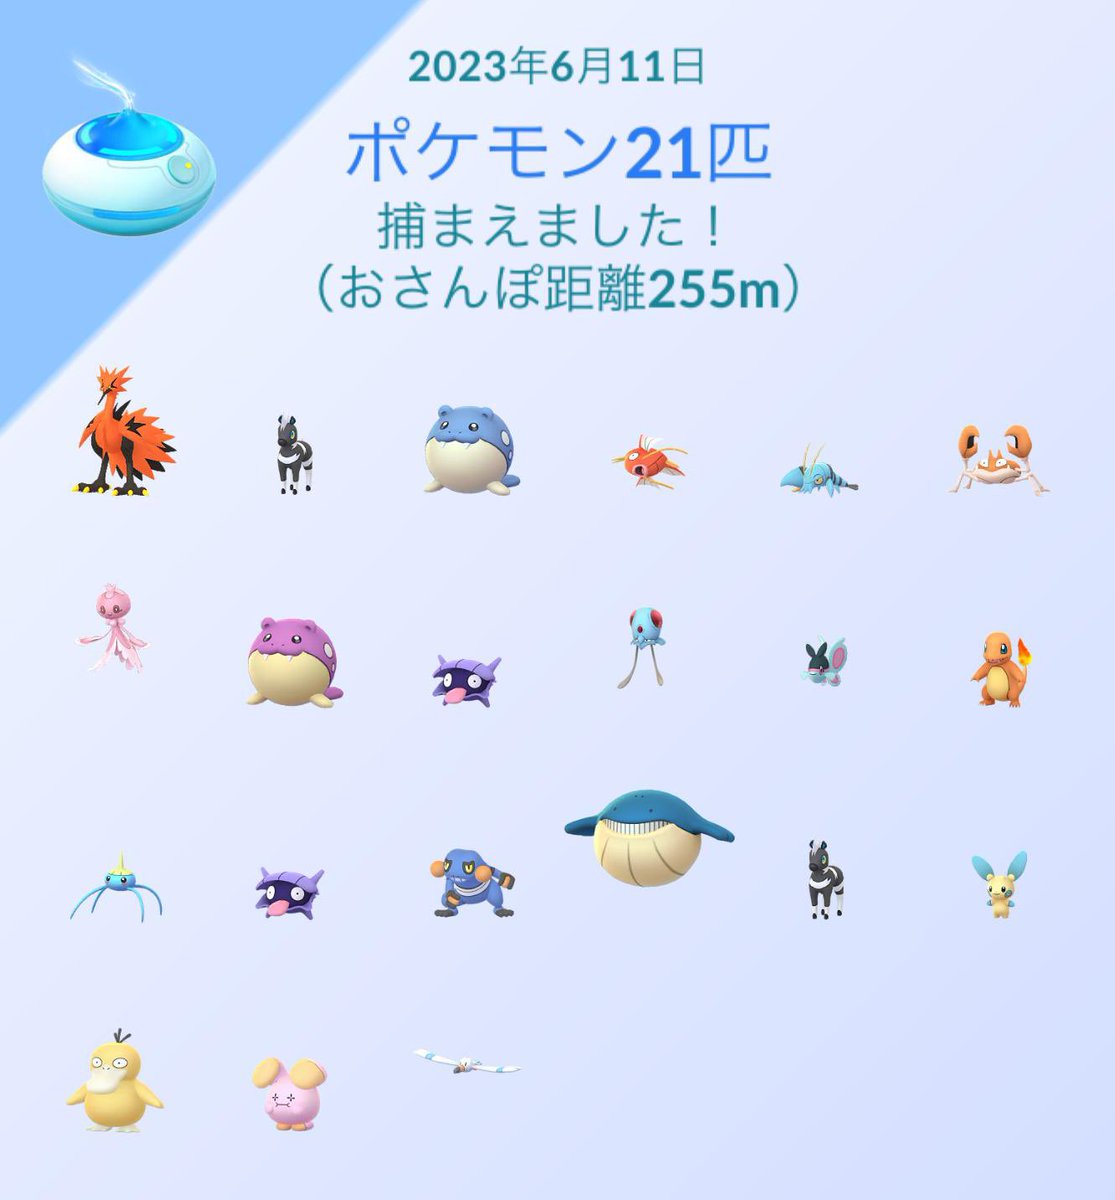 Pokémon GO の楽しさを体験しよう！pokemongolive.com/refer?code=YKG…

お気づきいただけただろうか…🥰🥰🥰